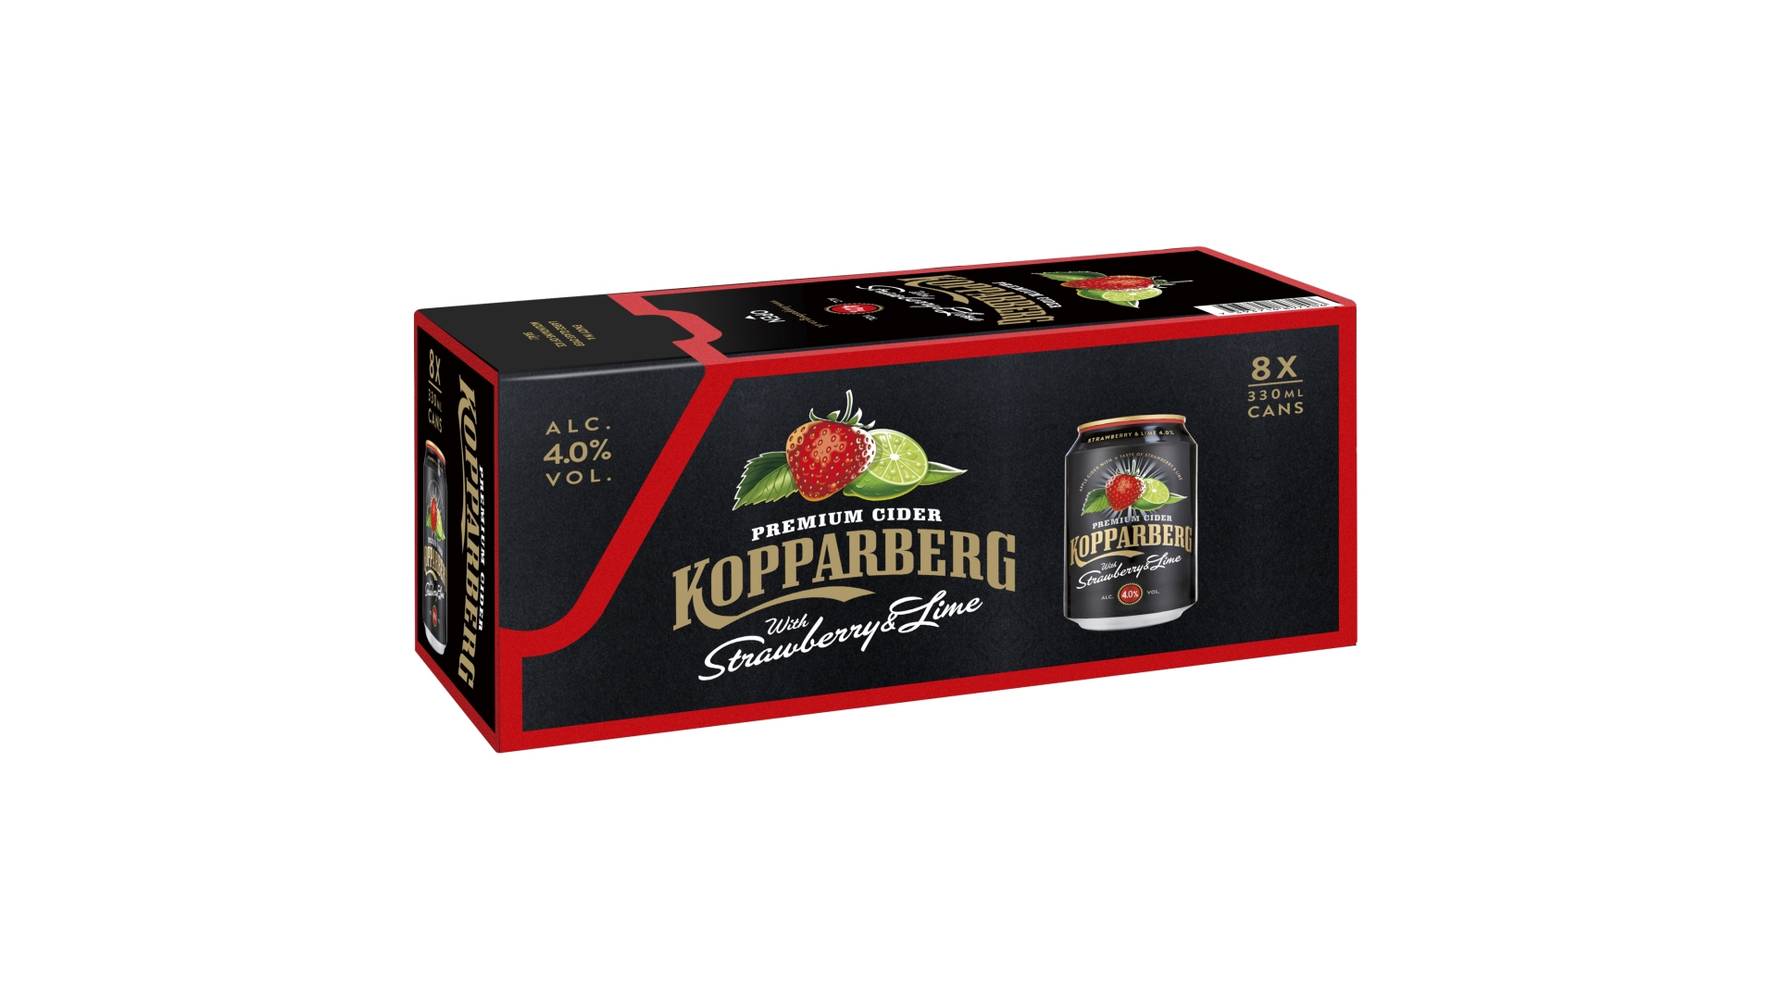 Kopparberg Premium Cider (8 pack, 0.33 L) (strawberry-lime)